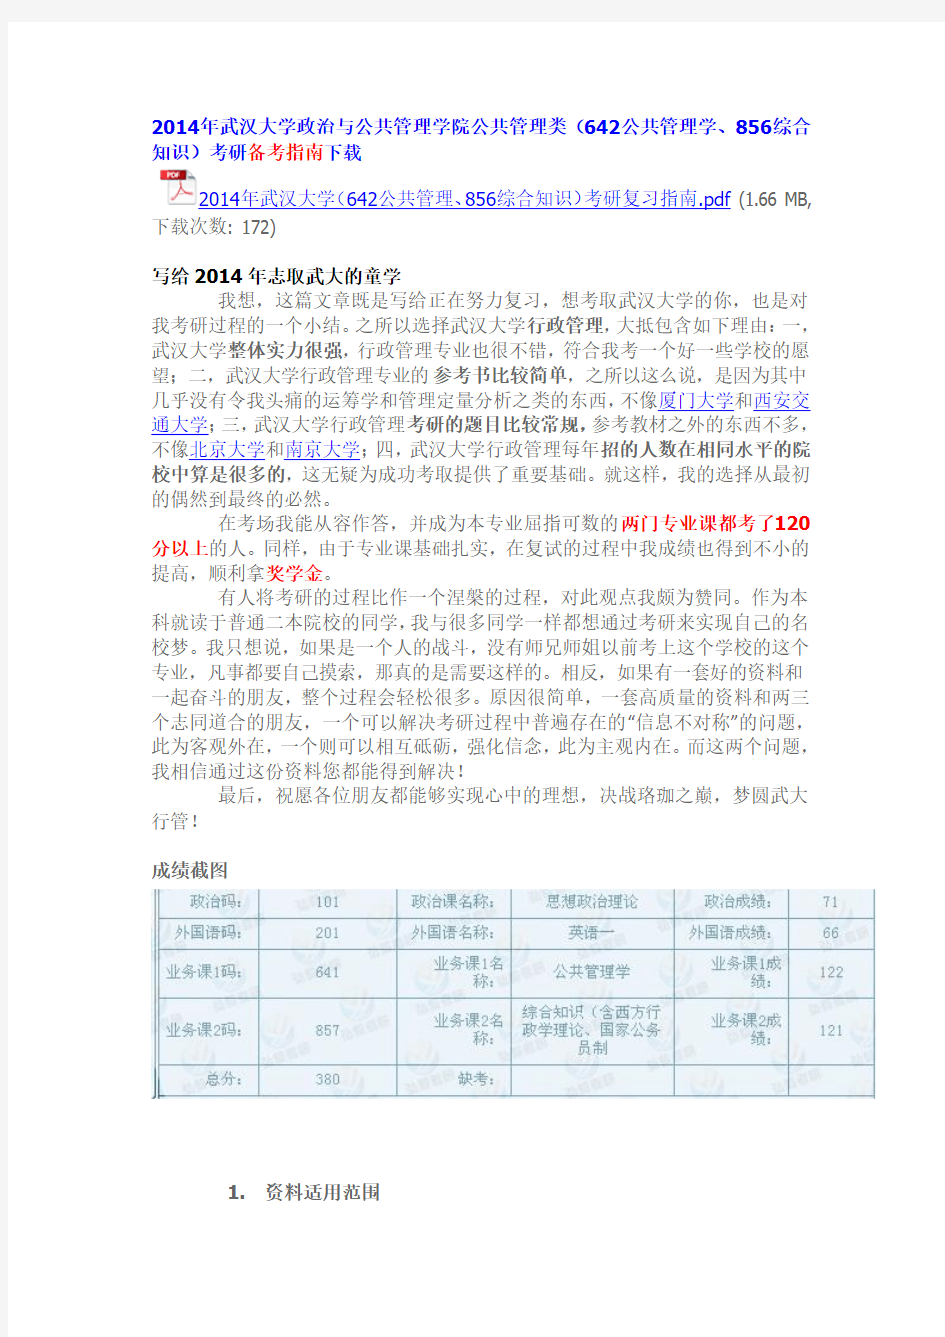 武汉大学土地资源管理考研真题答案、经验指南、笔记讲义、(汇总贴)